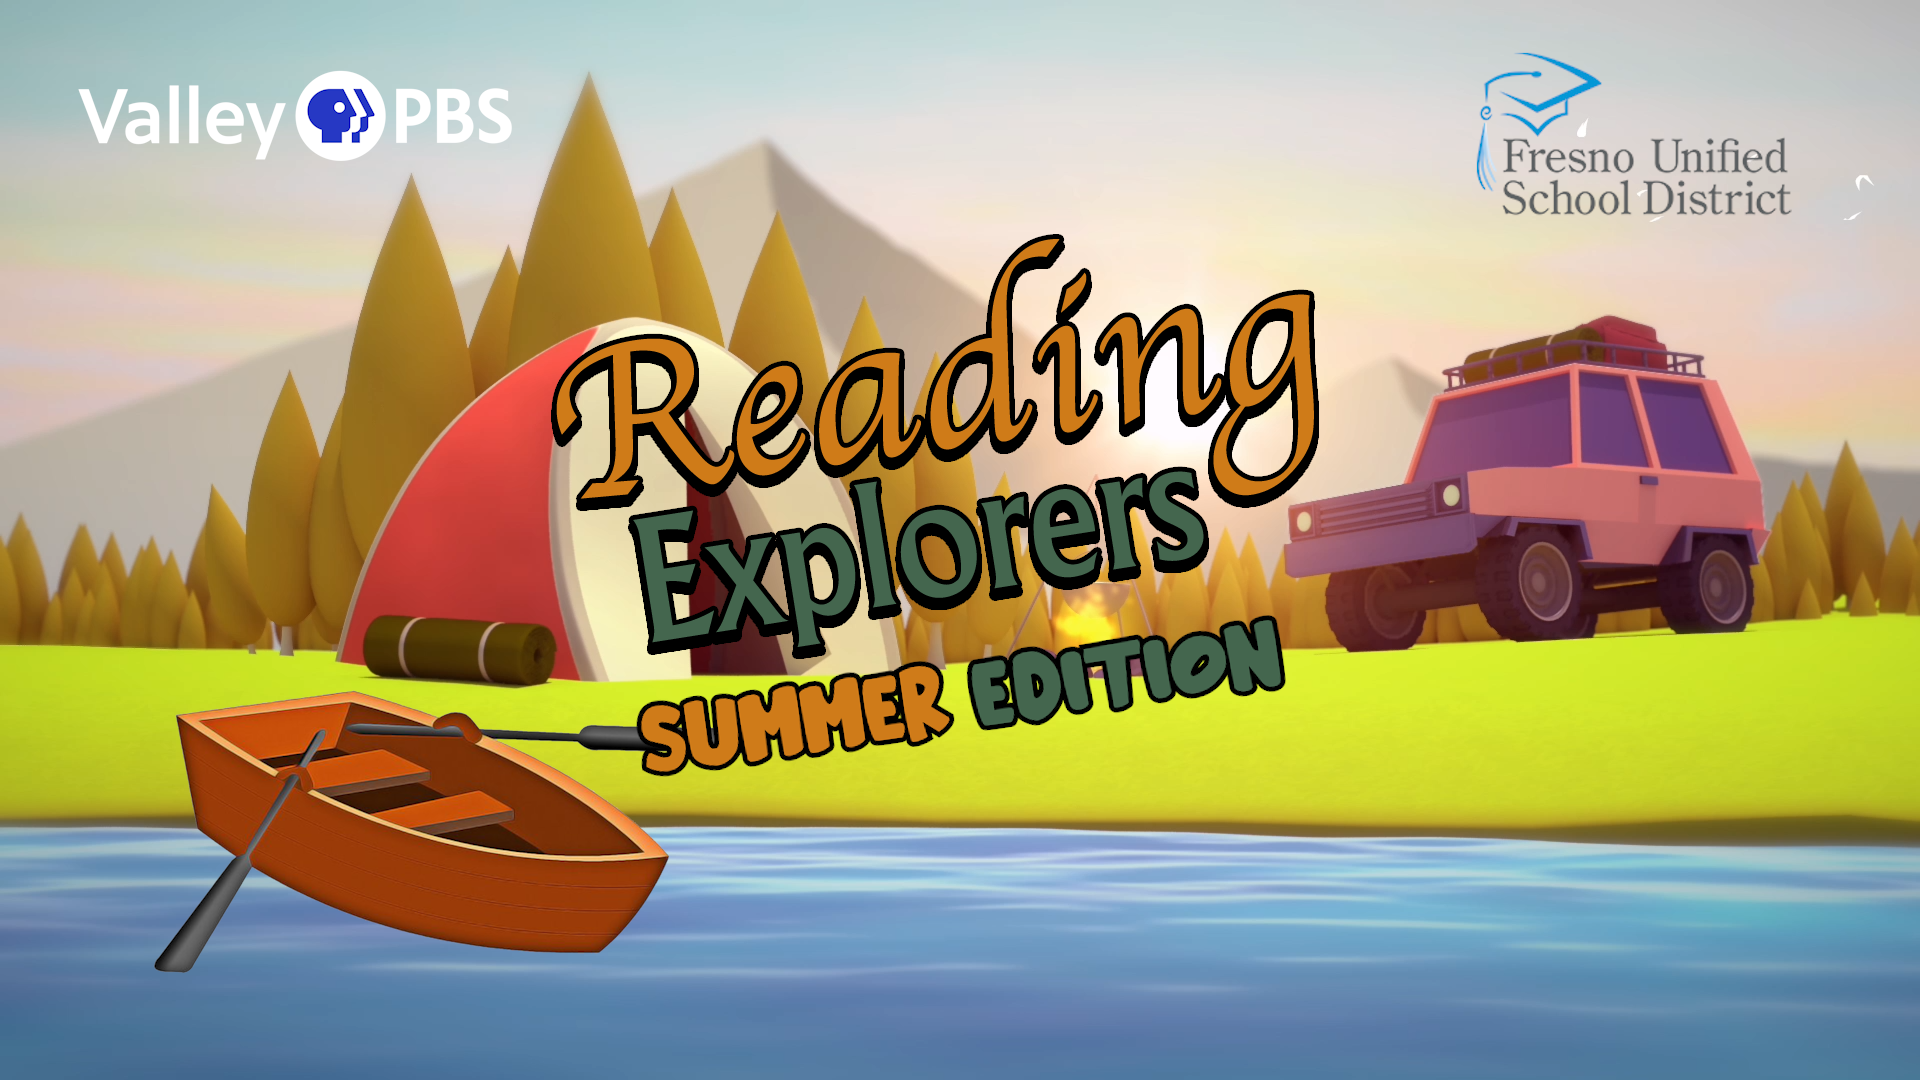 Reading Explorers